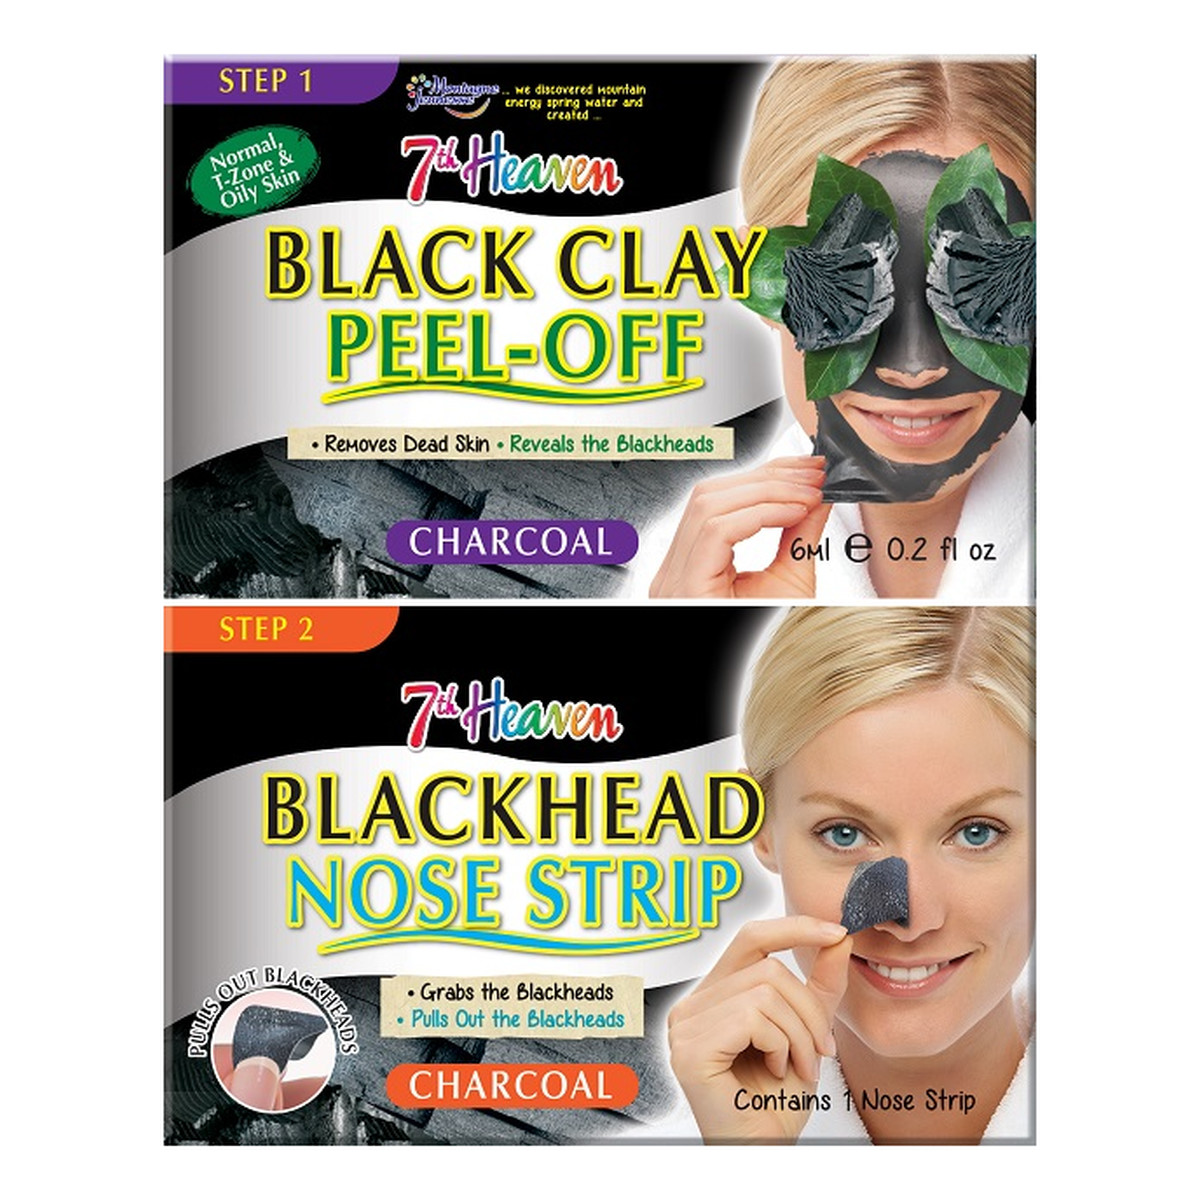 7th Heaven Charcoal Duo Black Clay Peel Off Węglowa maseczka do twarzy Black Clay + Blackhead Nose Strip pasek na nos niwelujący zaskórniki